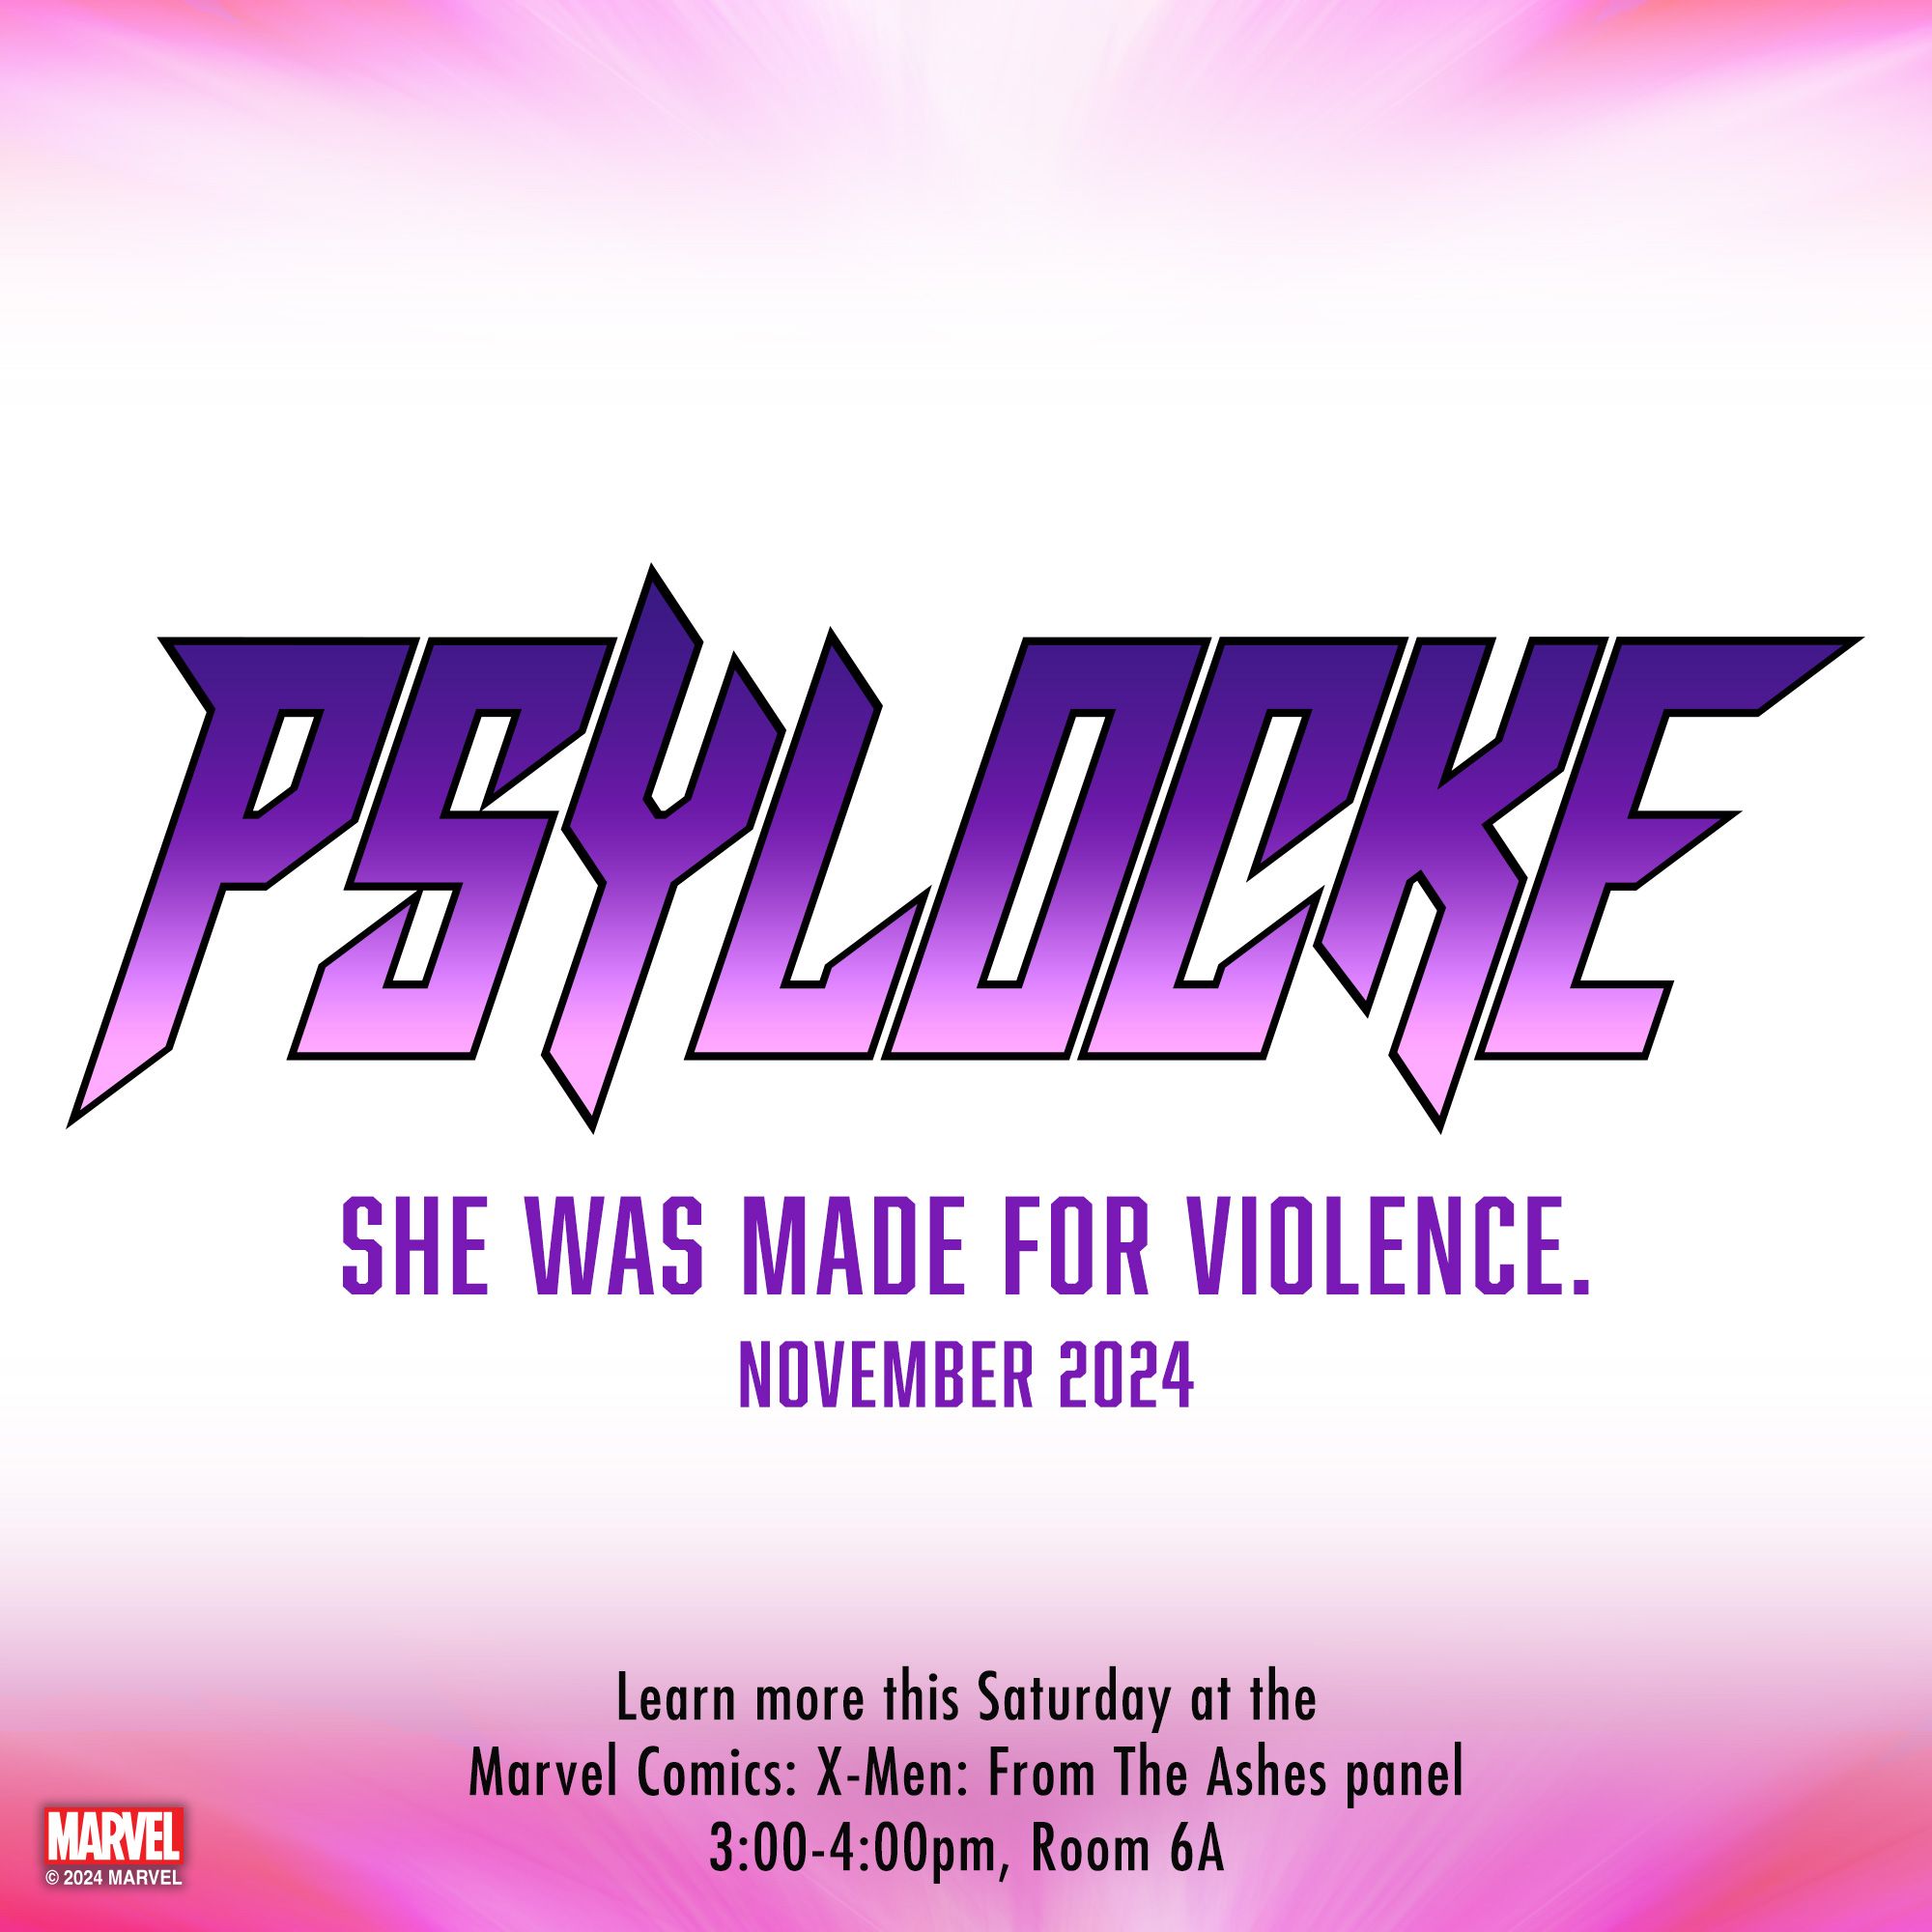 Marvel's teaser for Psylocke's series